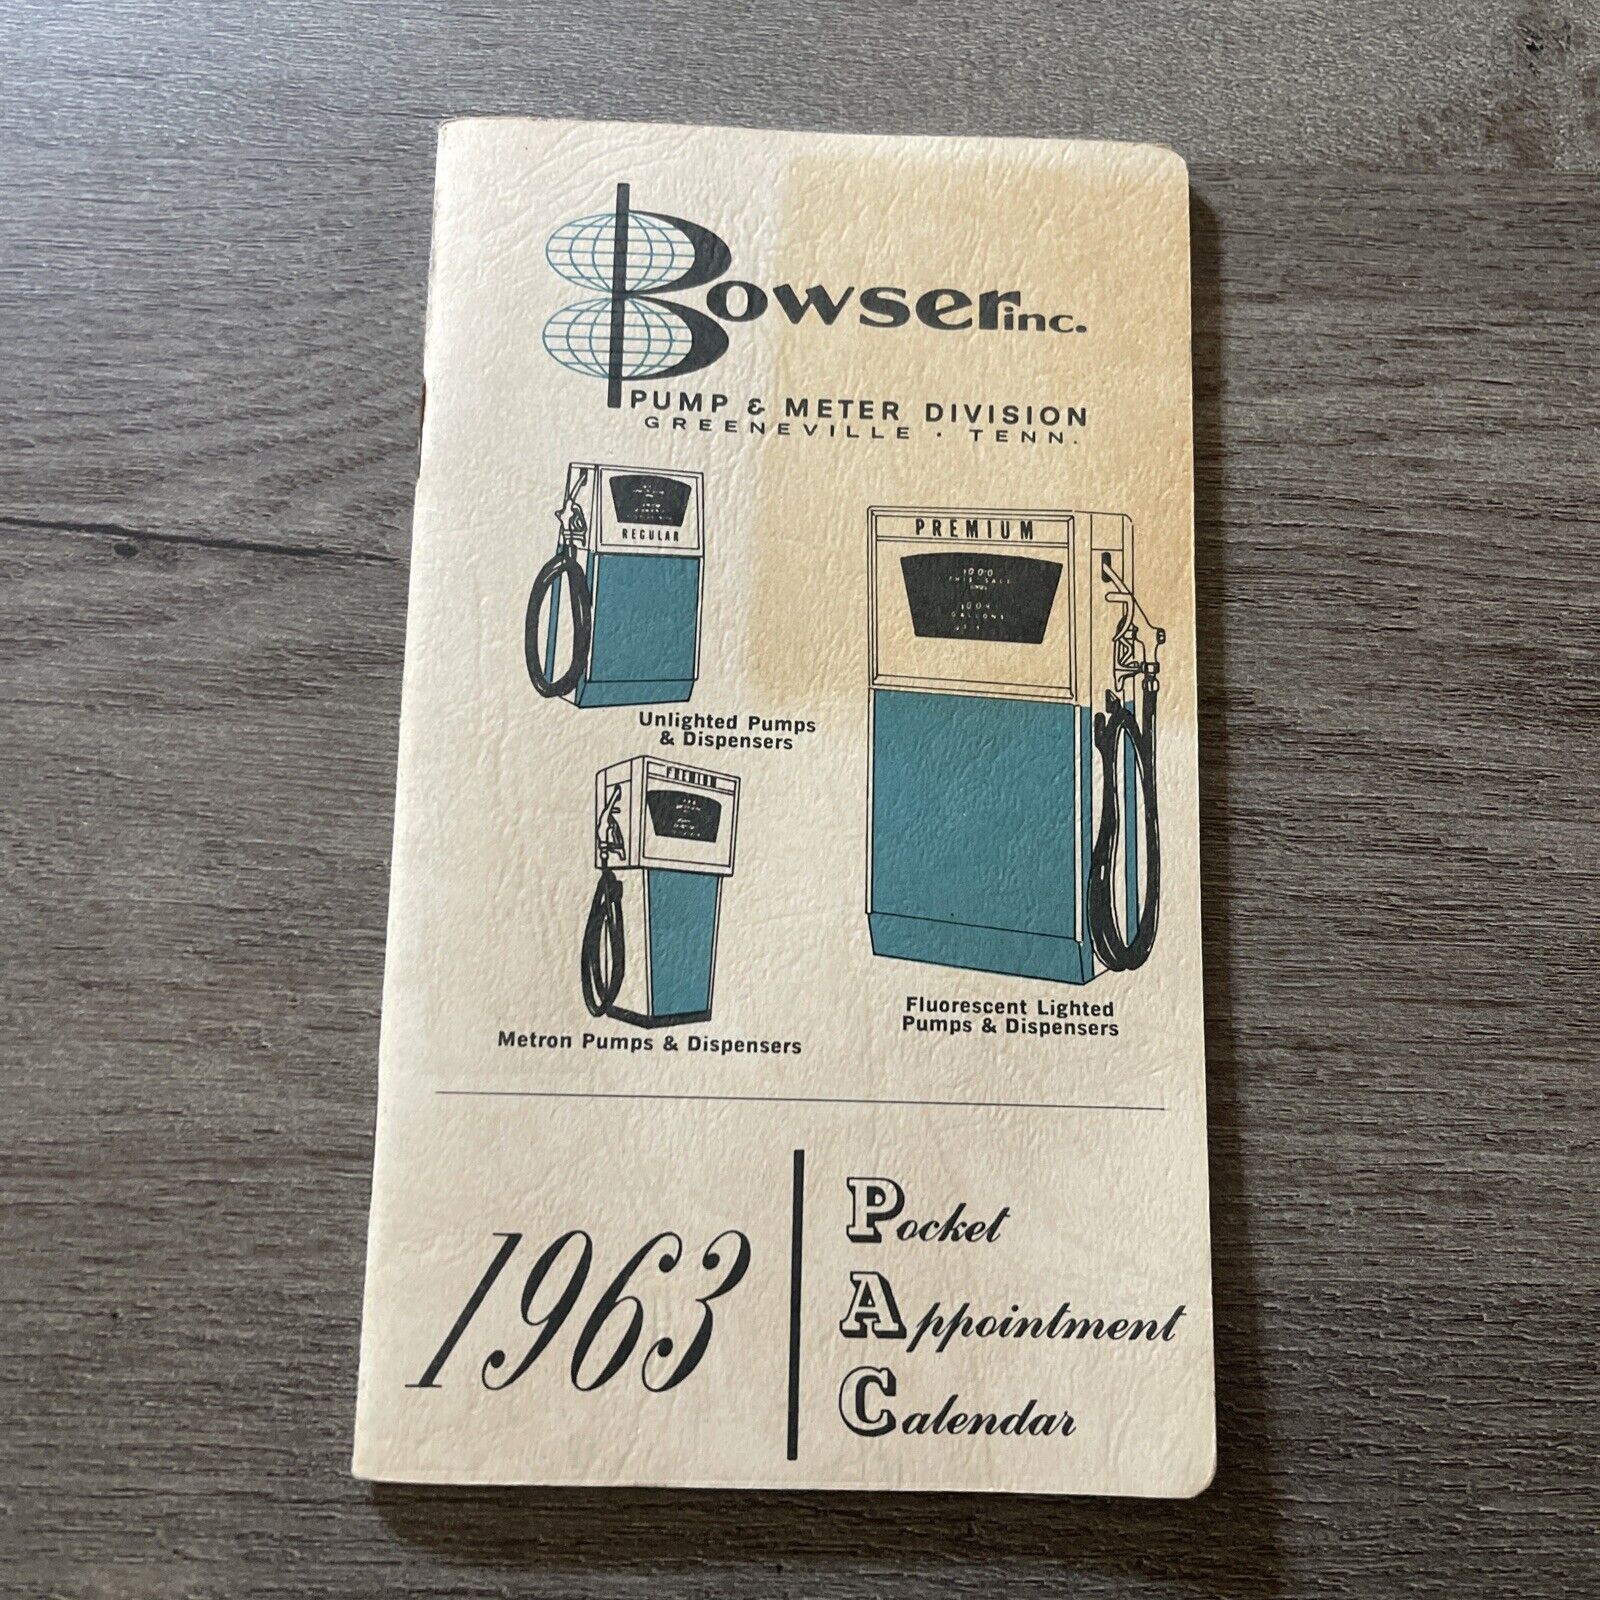 Vintage 1963 Pocket Appointment Calendar Bowser Inc Gas Pump Advertisement